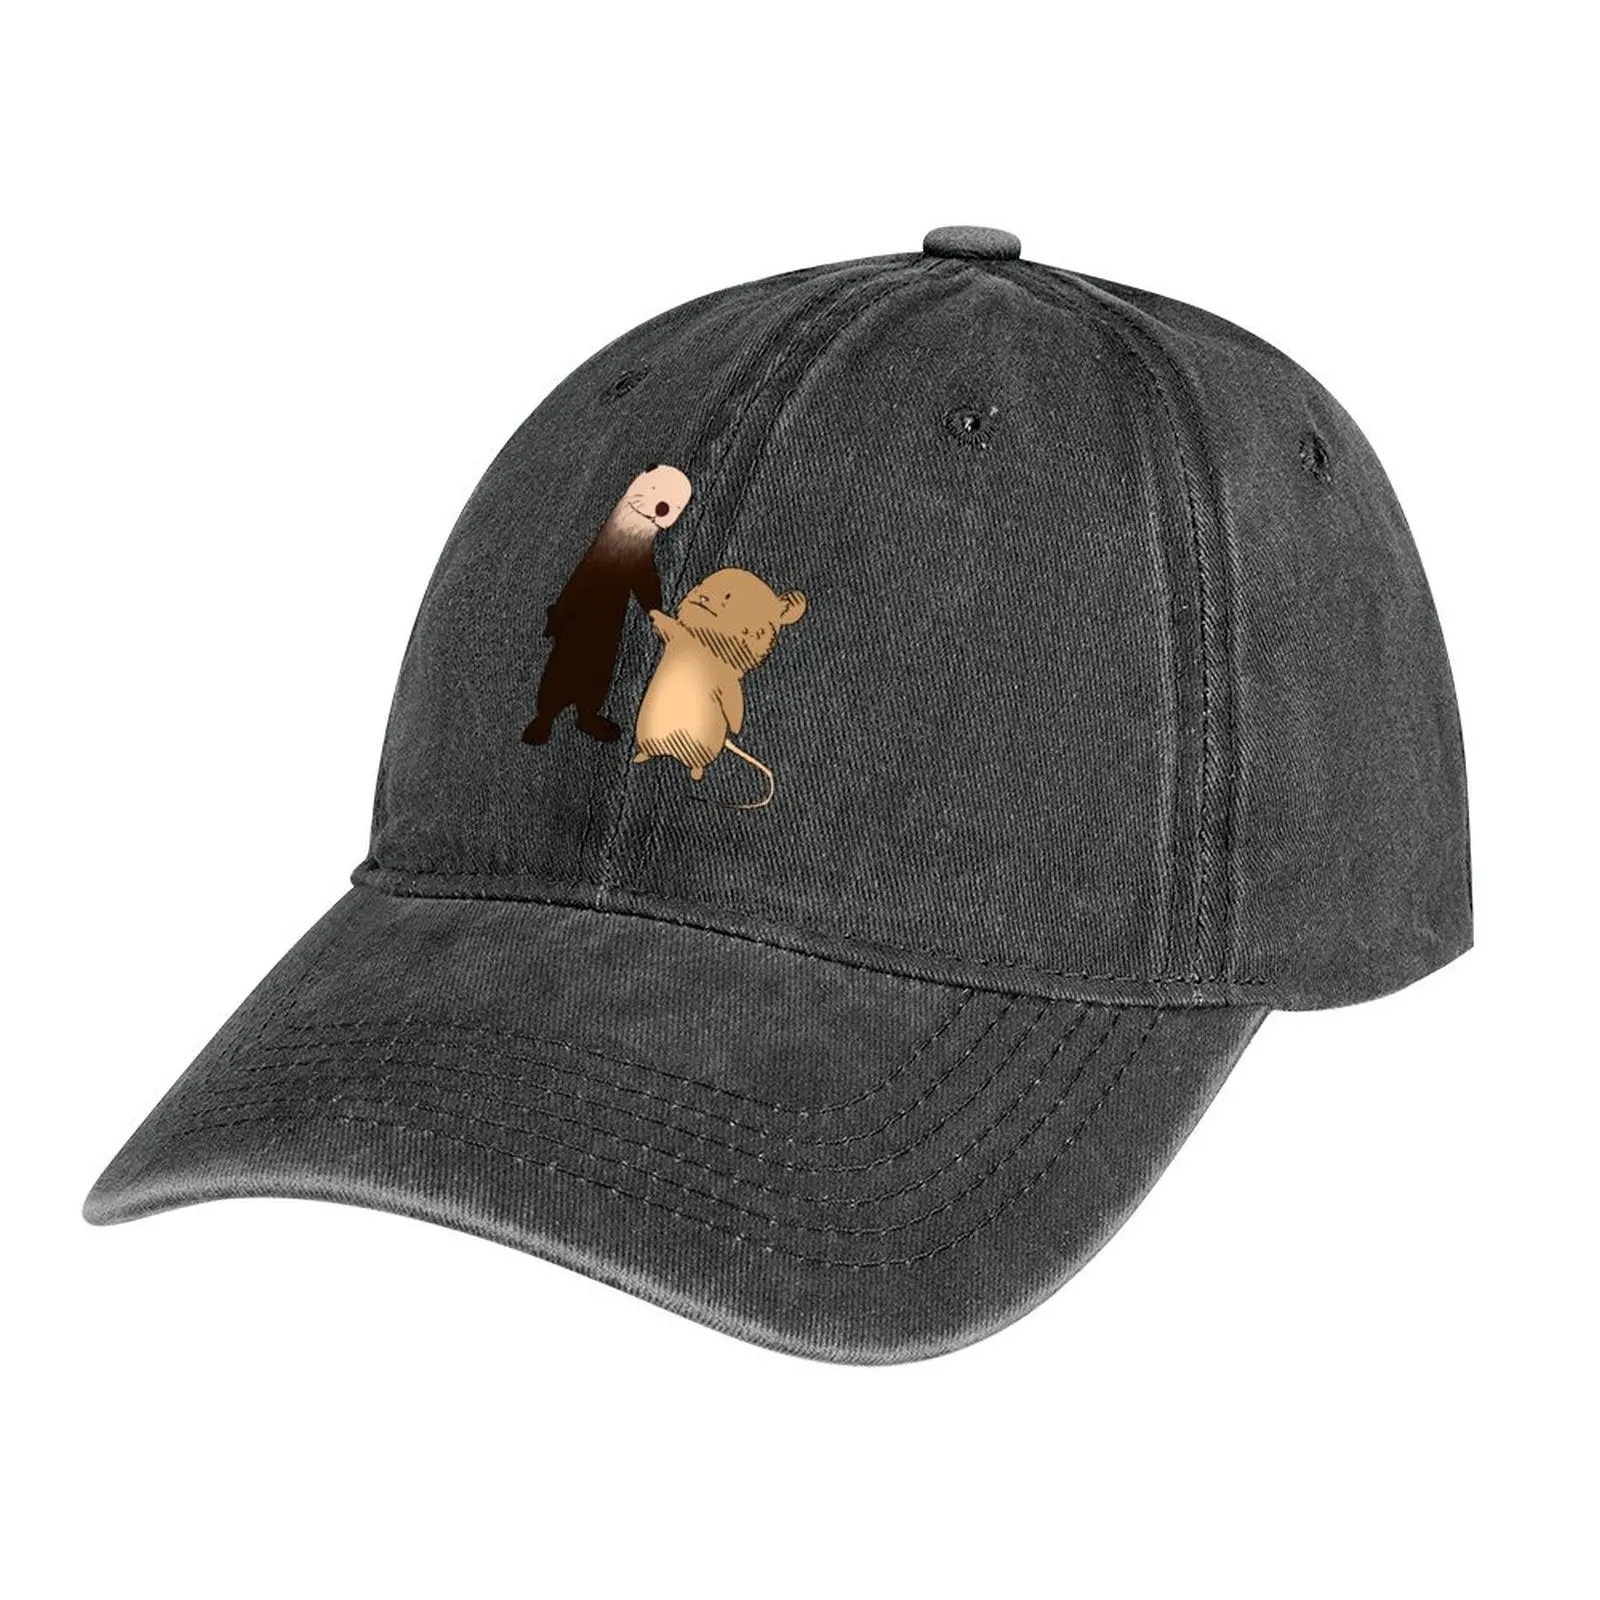 

Ковбойская шляпа с выдрой и мышью |-F-| Козырек, твердая шляпа, мужские женские шляпы